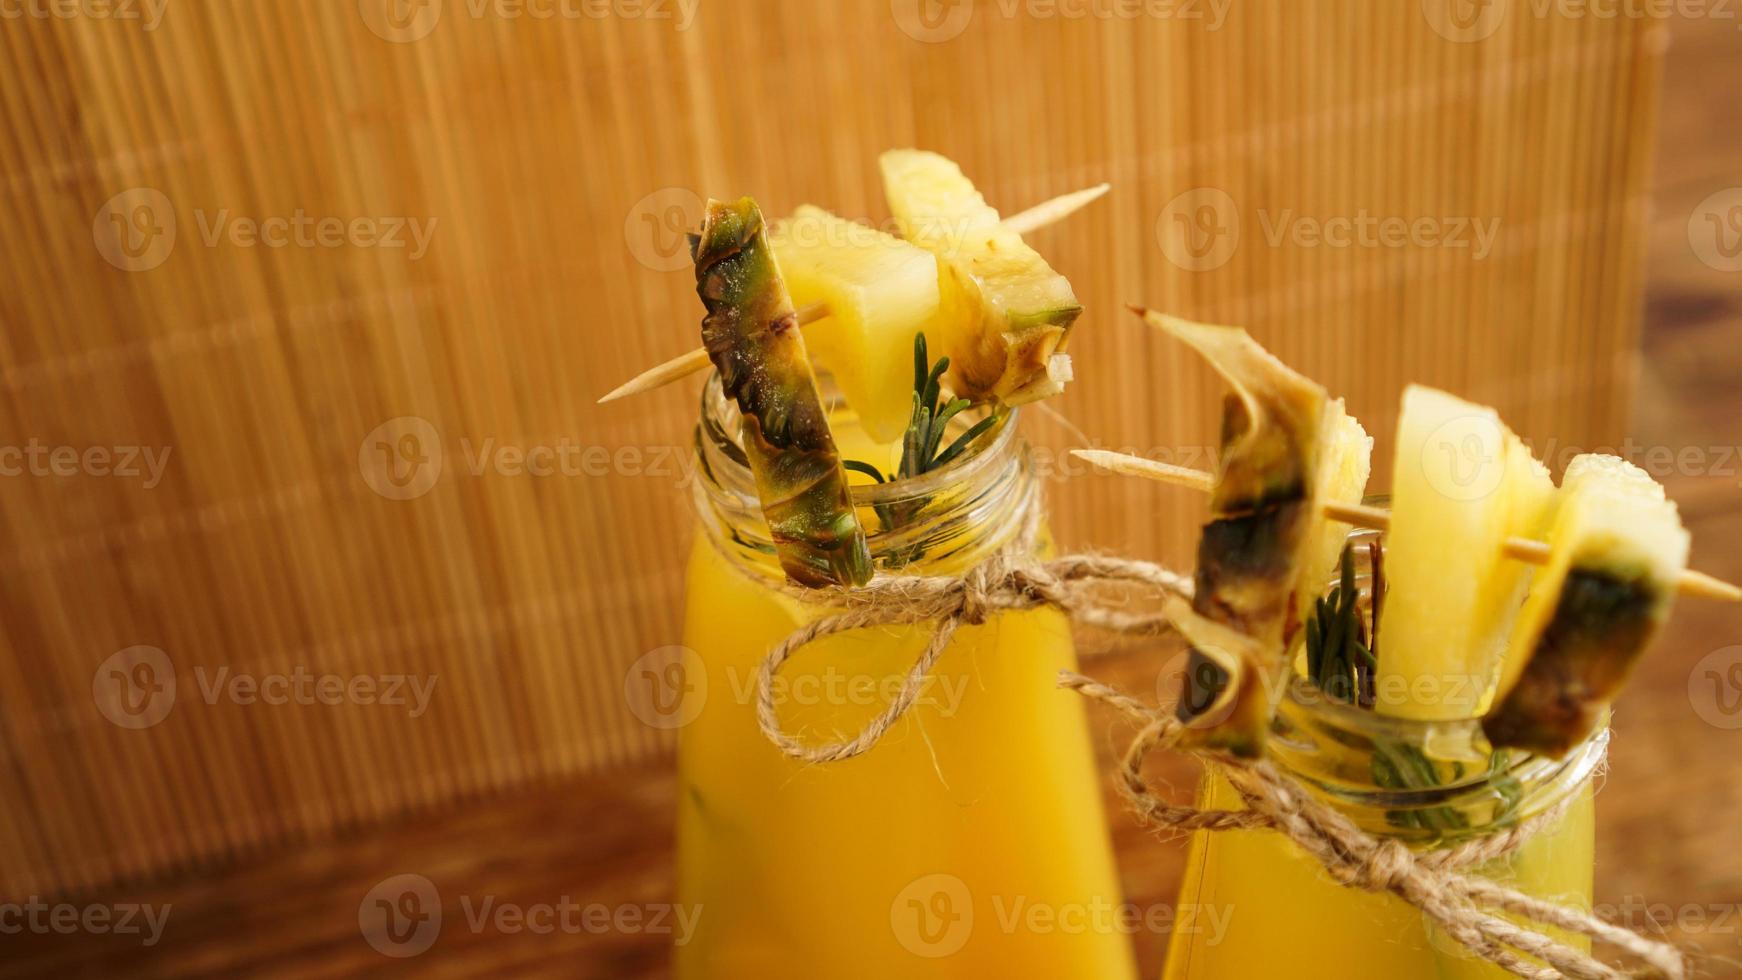 succo d'ananas in una bottiglietta. fette di ananas decorano la bevanda foto